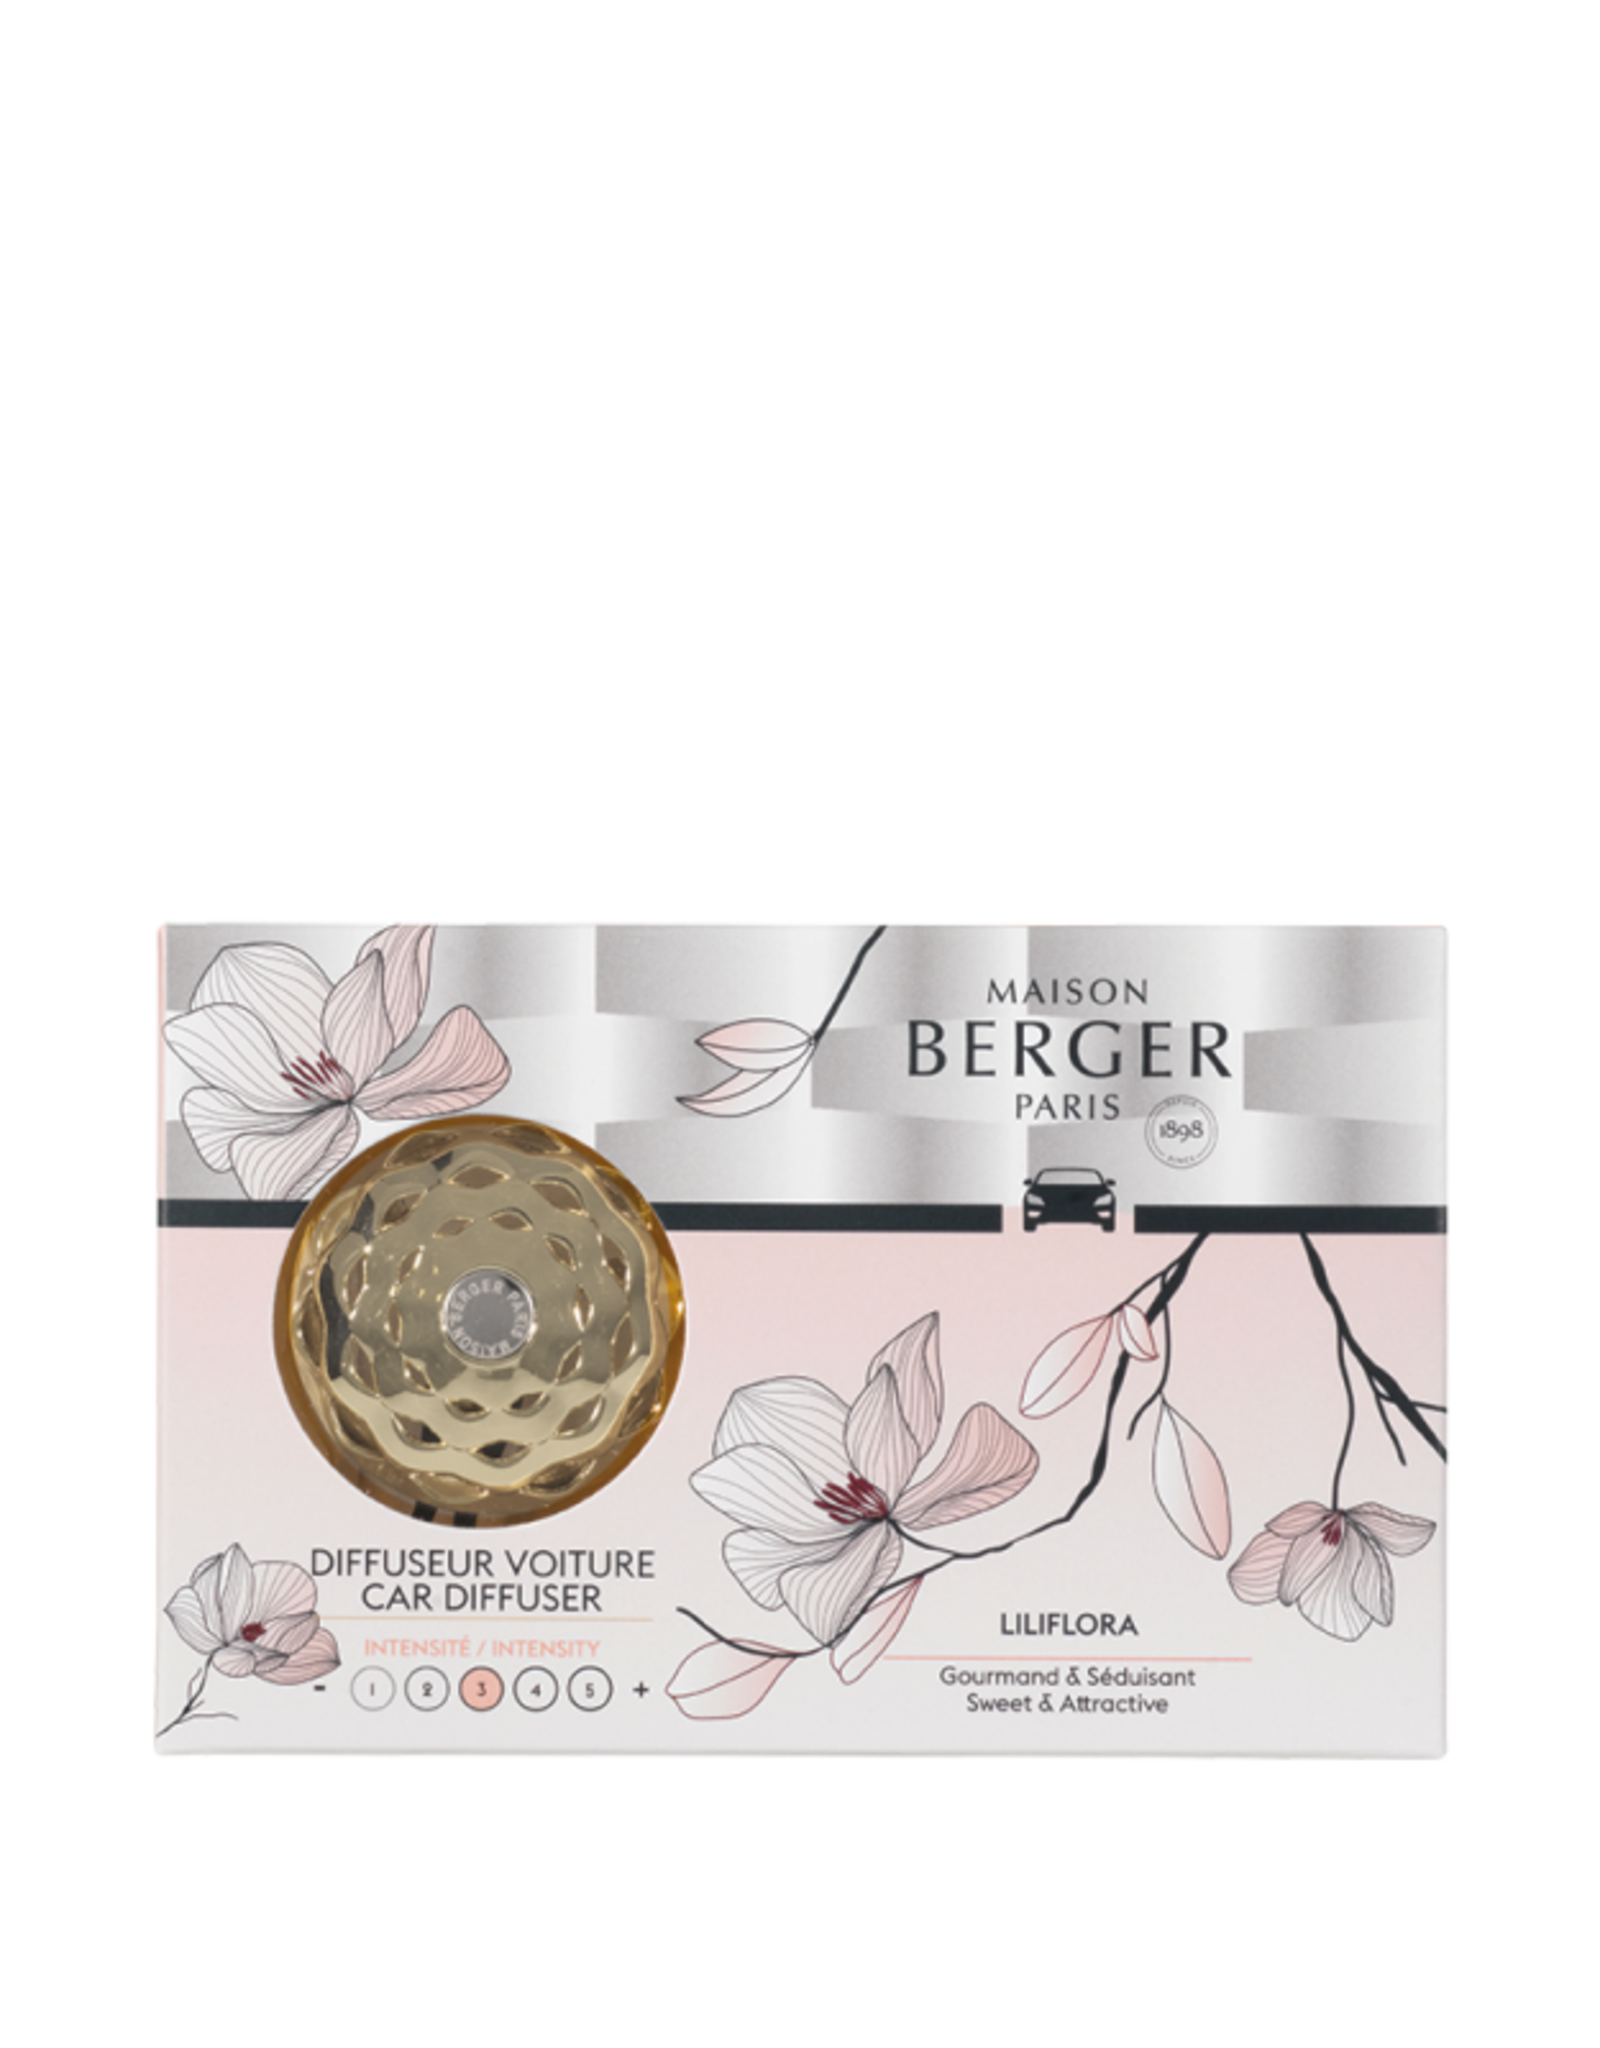 Maison Berger Autoparfum Startersset + 1 navulling Liliflora